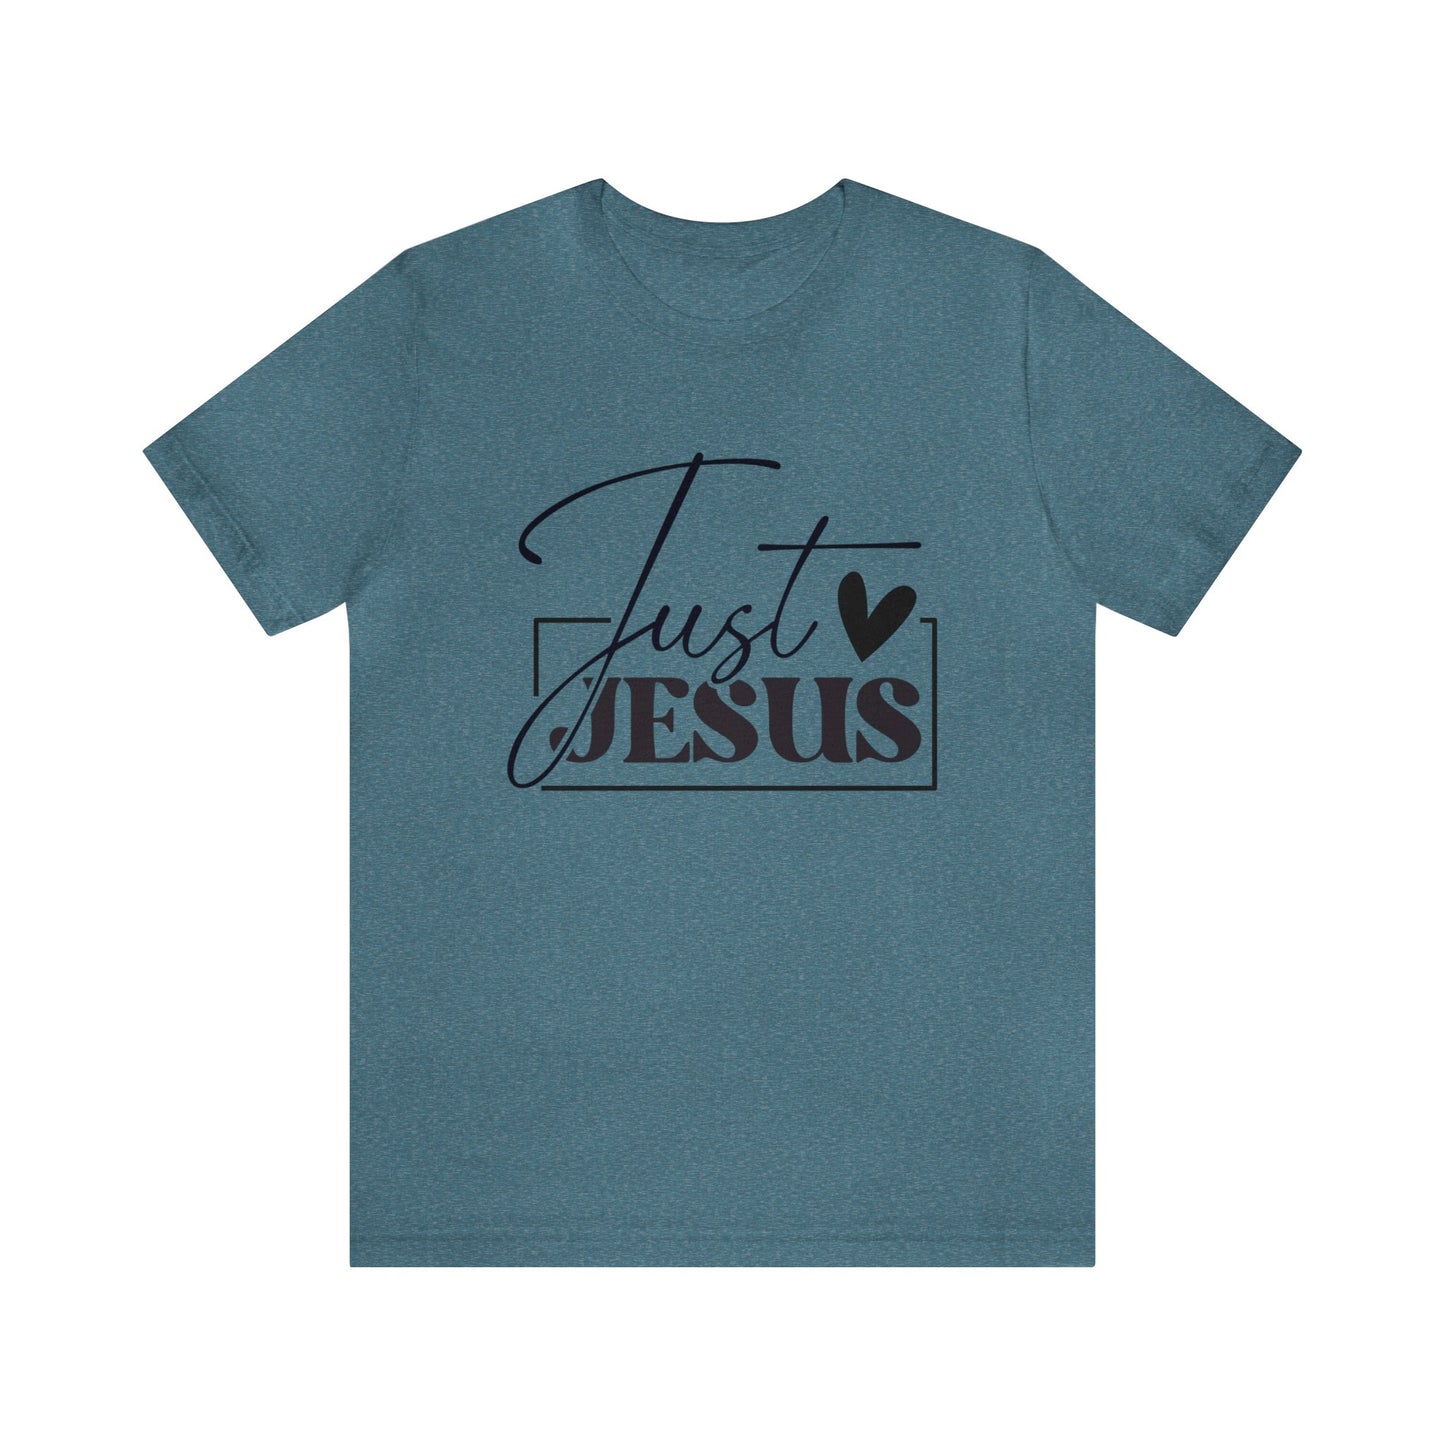 Just Jesus Women's Short Sleeve Tee